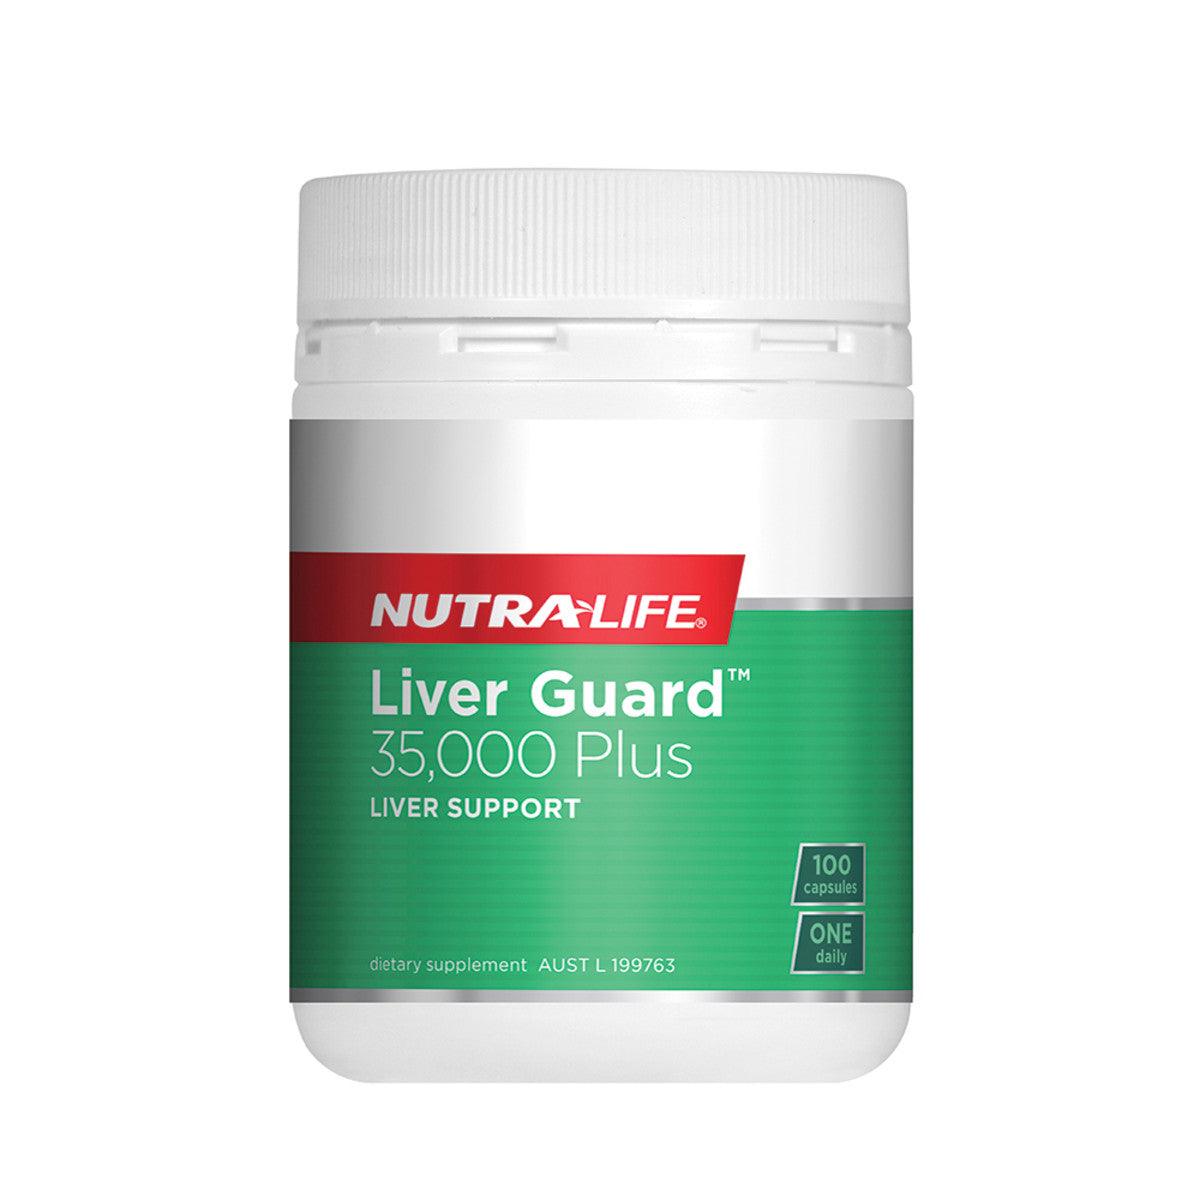 NutraLife Liver Guard 35,000 Plus 100 Capsules - QVM Vitamins™